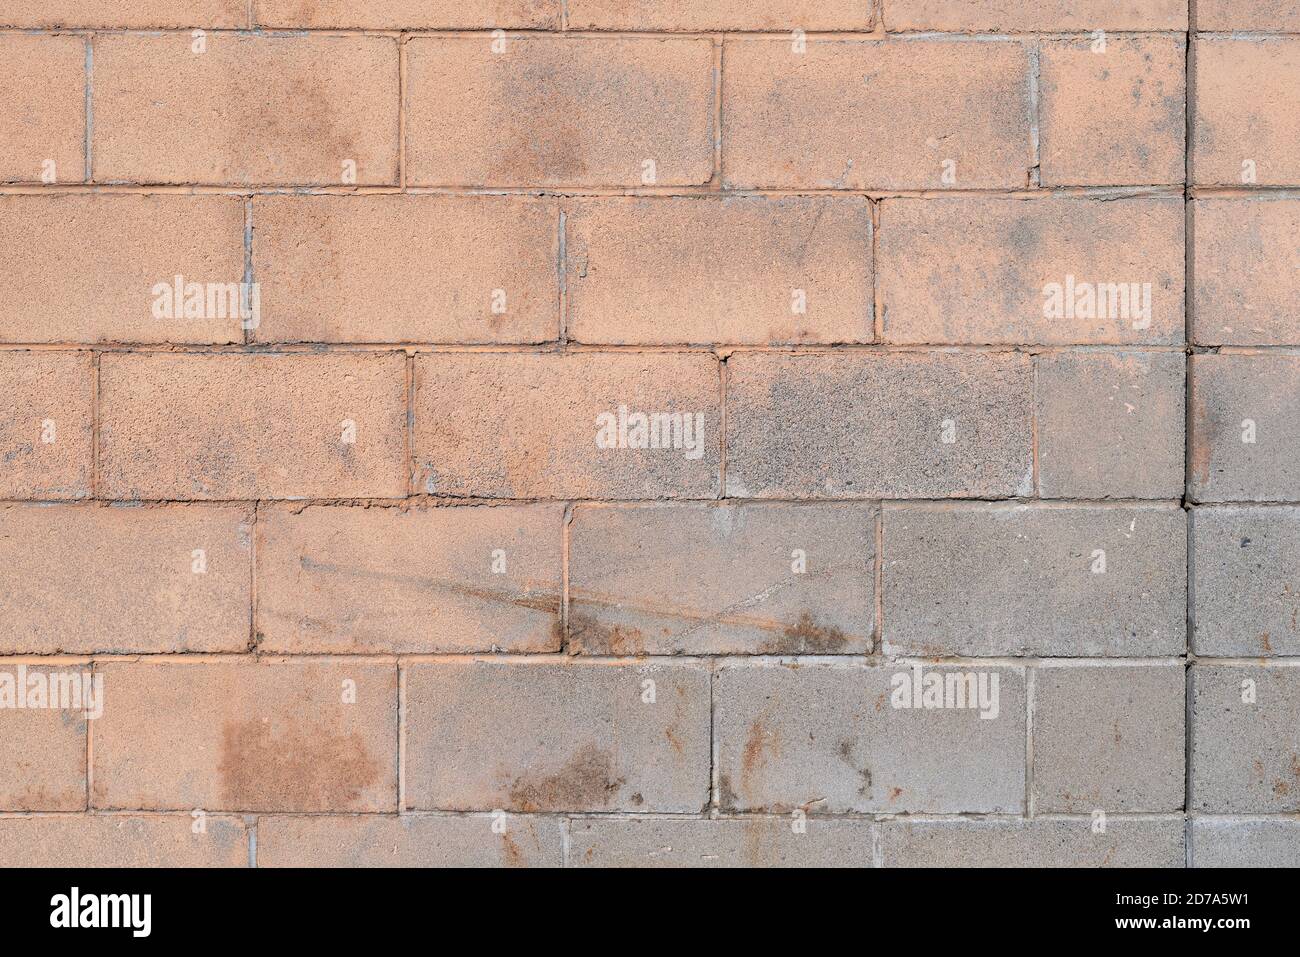 Dehnfuge in einem schmutzigen Mauerwerk Wandblöcke mit abblätternder beigefarbener Farbe und Kratzern vom Alter im frühen Morgenlicht. Stockfoto